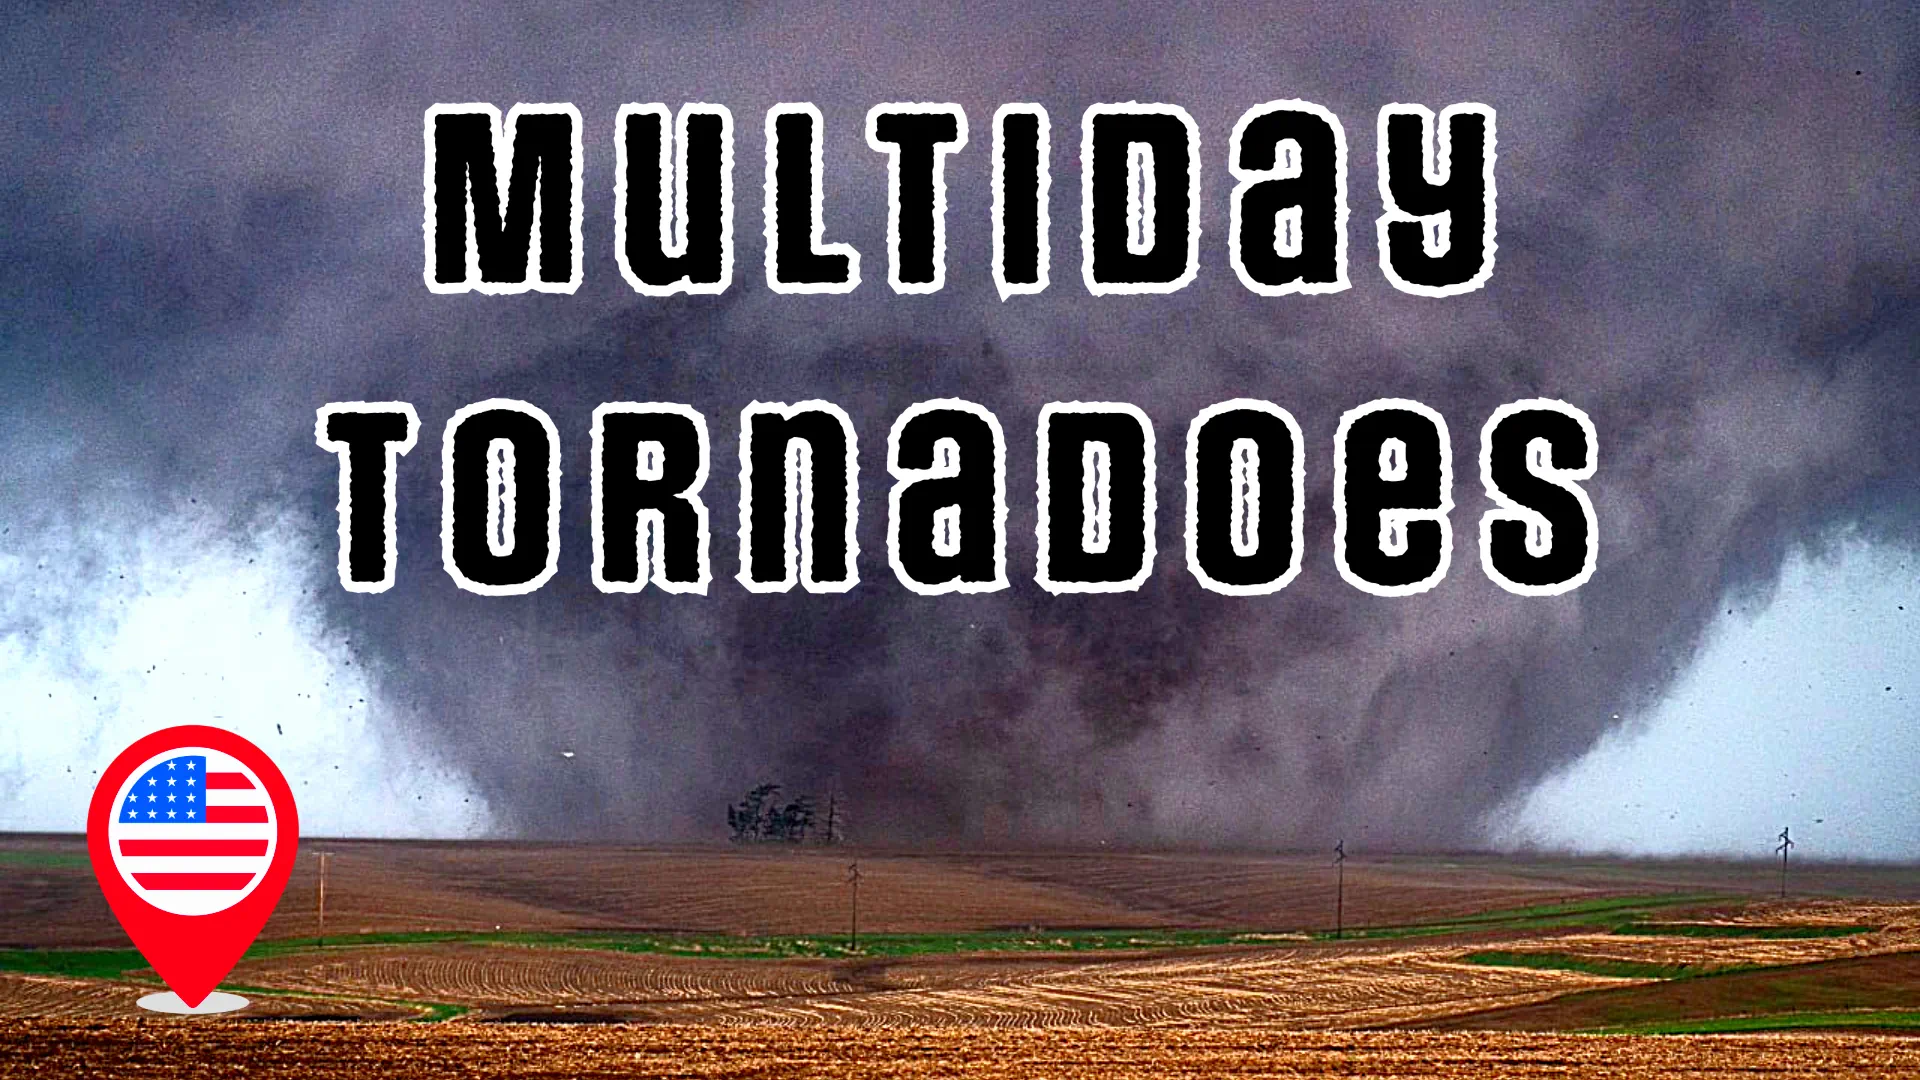 Tornado Outbreak! Heart of America Battered for Days (Nebraska & Iowa Devastation)